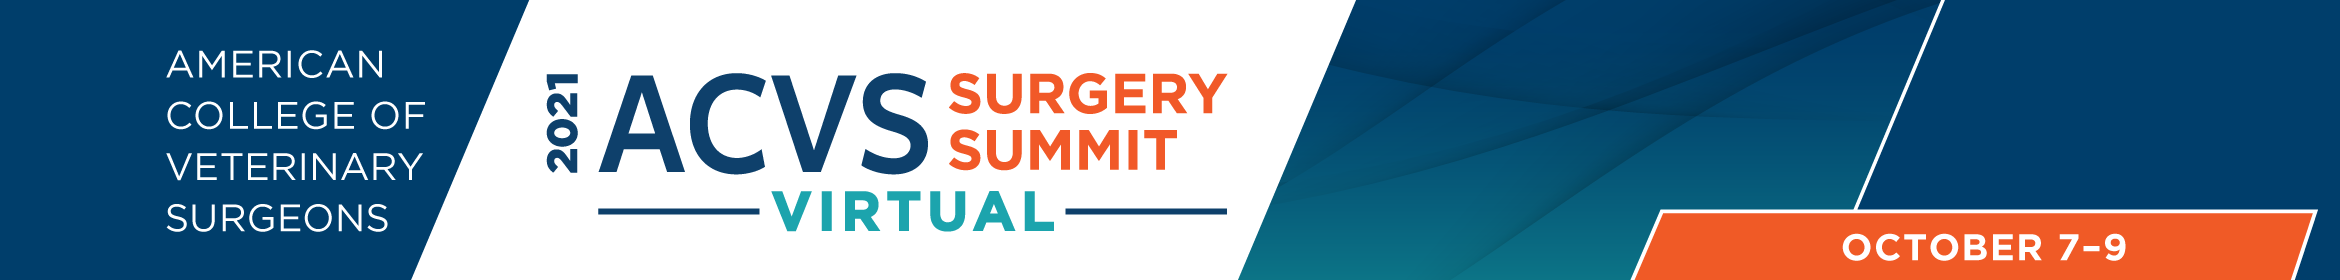 2021 ACVS Virtual Surgery Summit Main banner